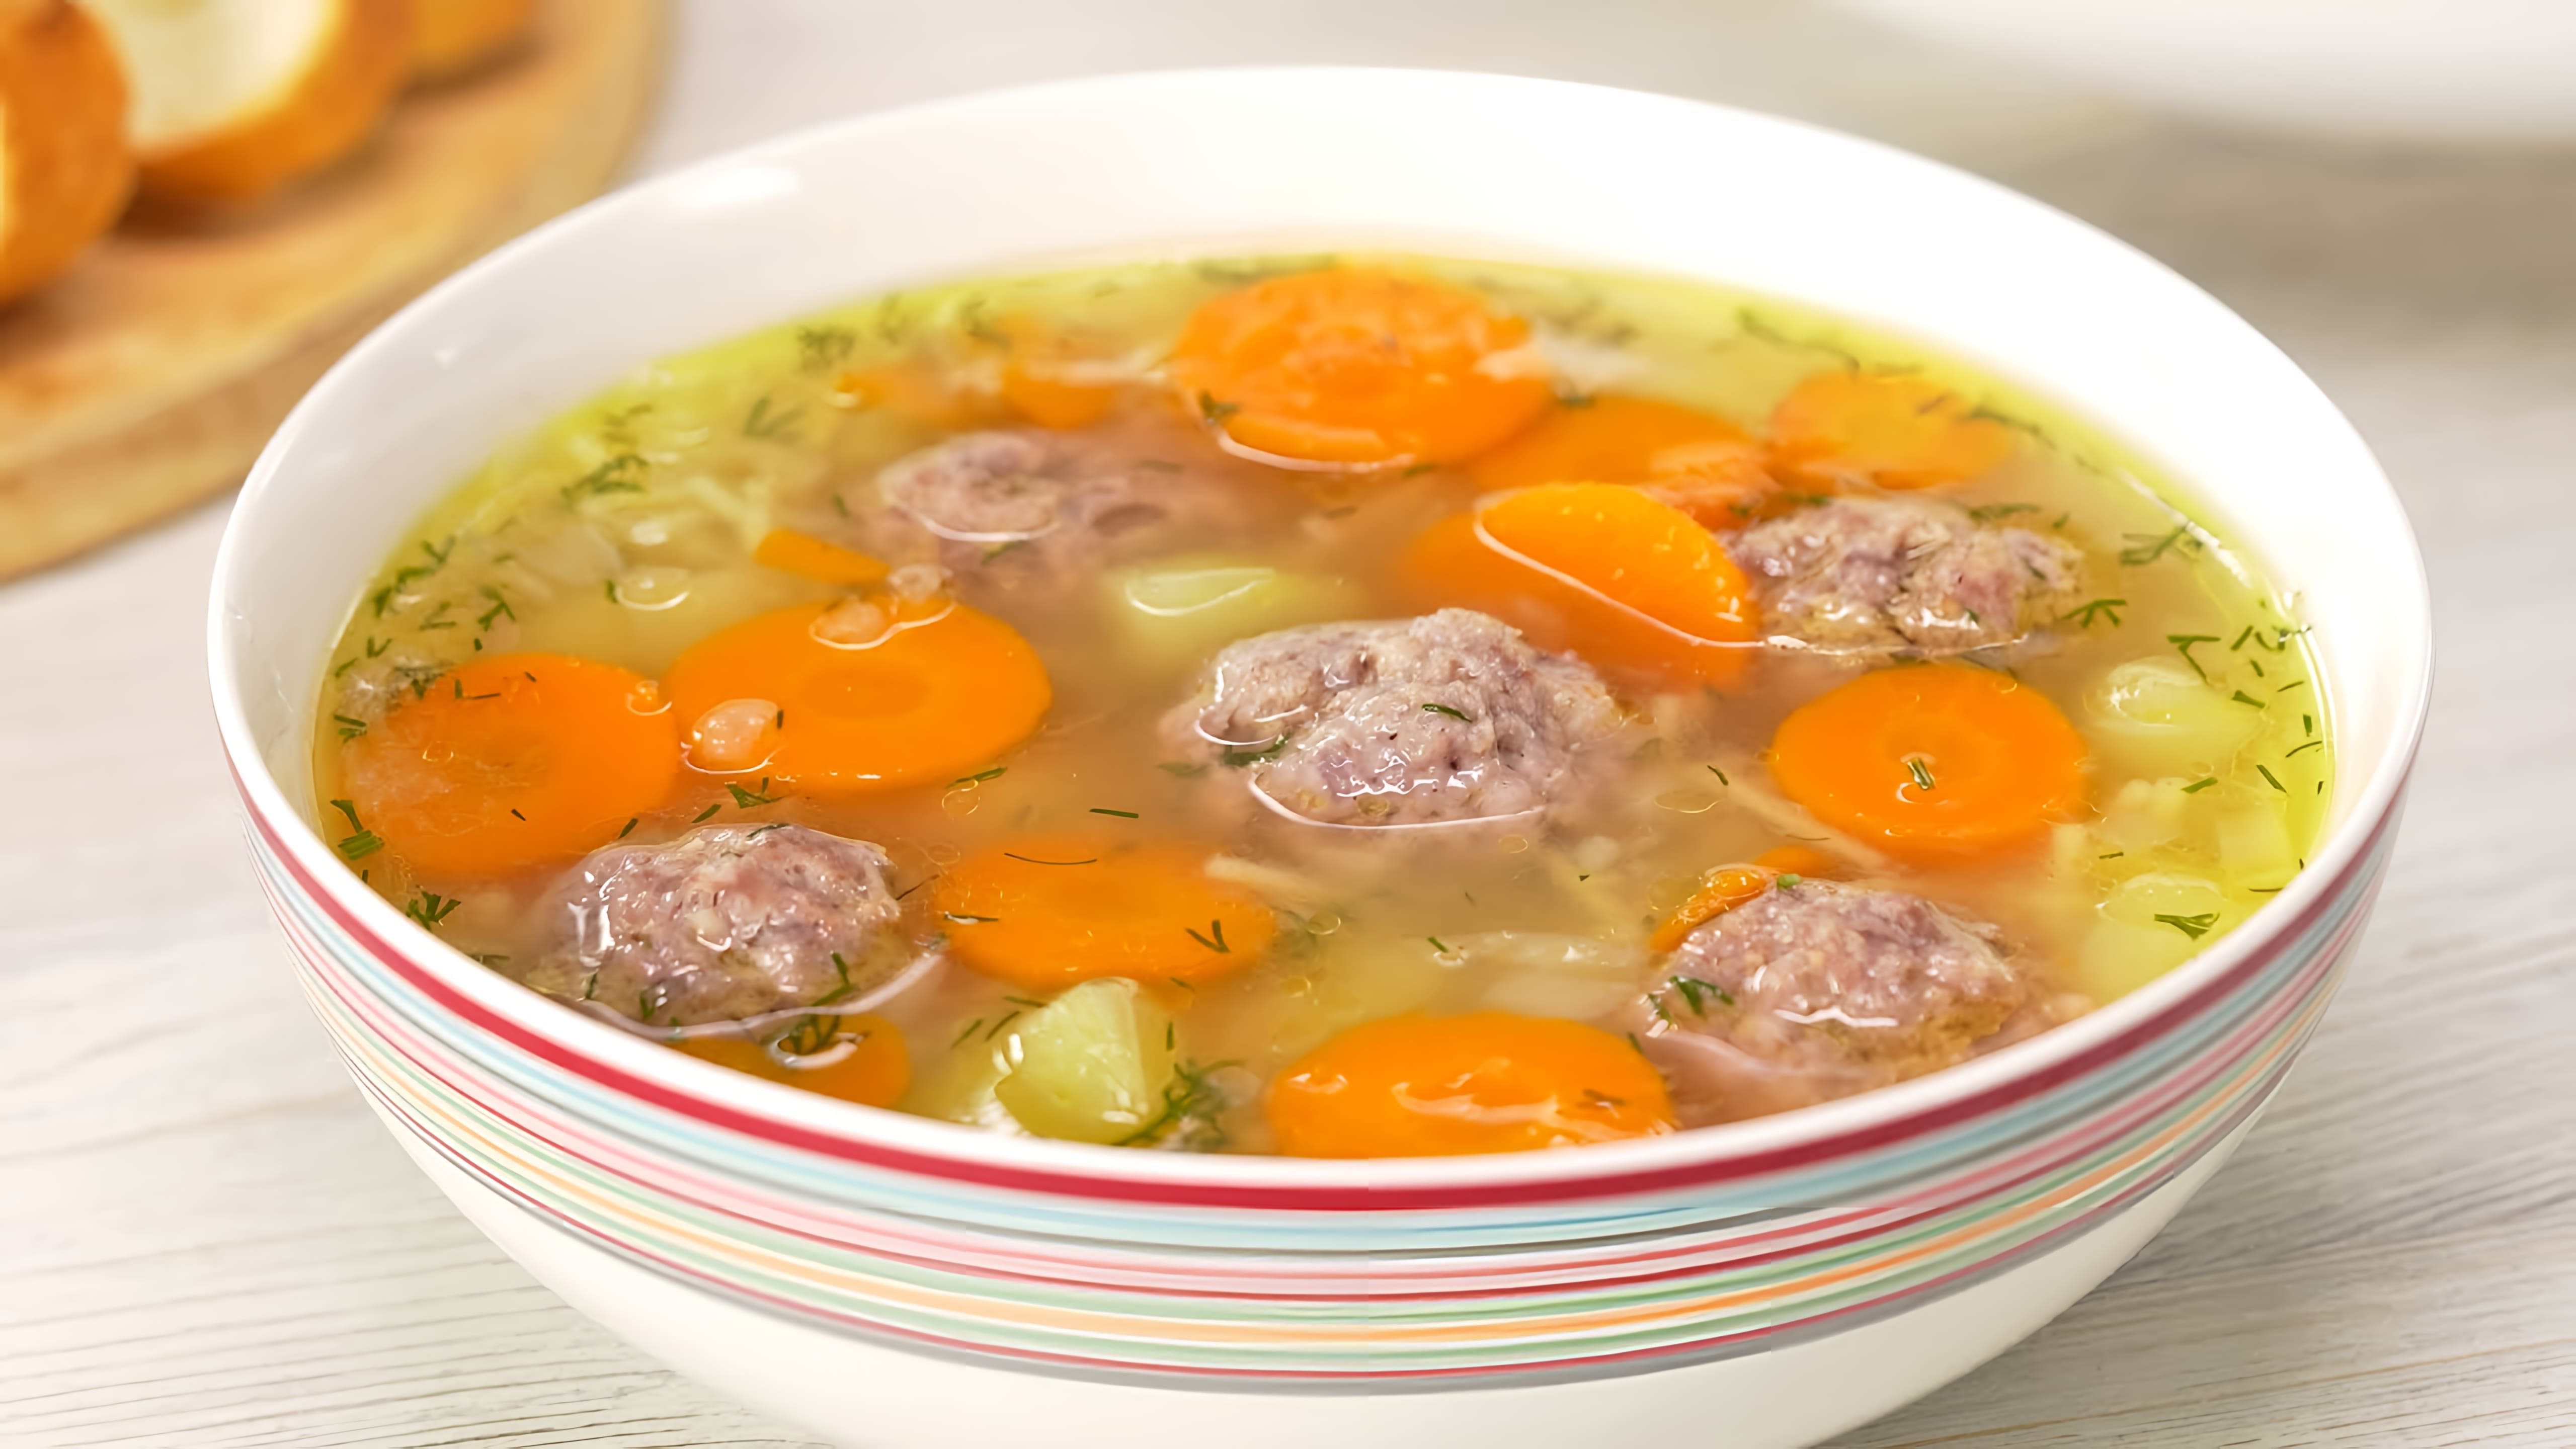 В данном видео демонстрируется рецепт приготовления вкусного и сытного супа с фрикадельками